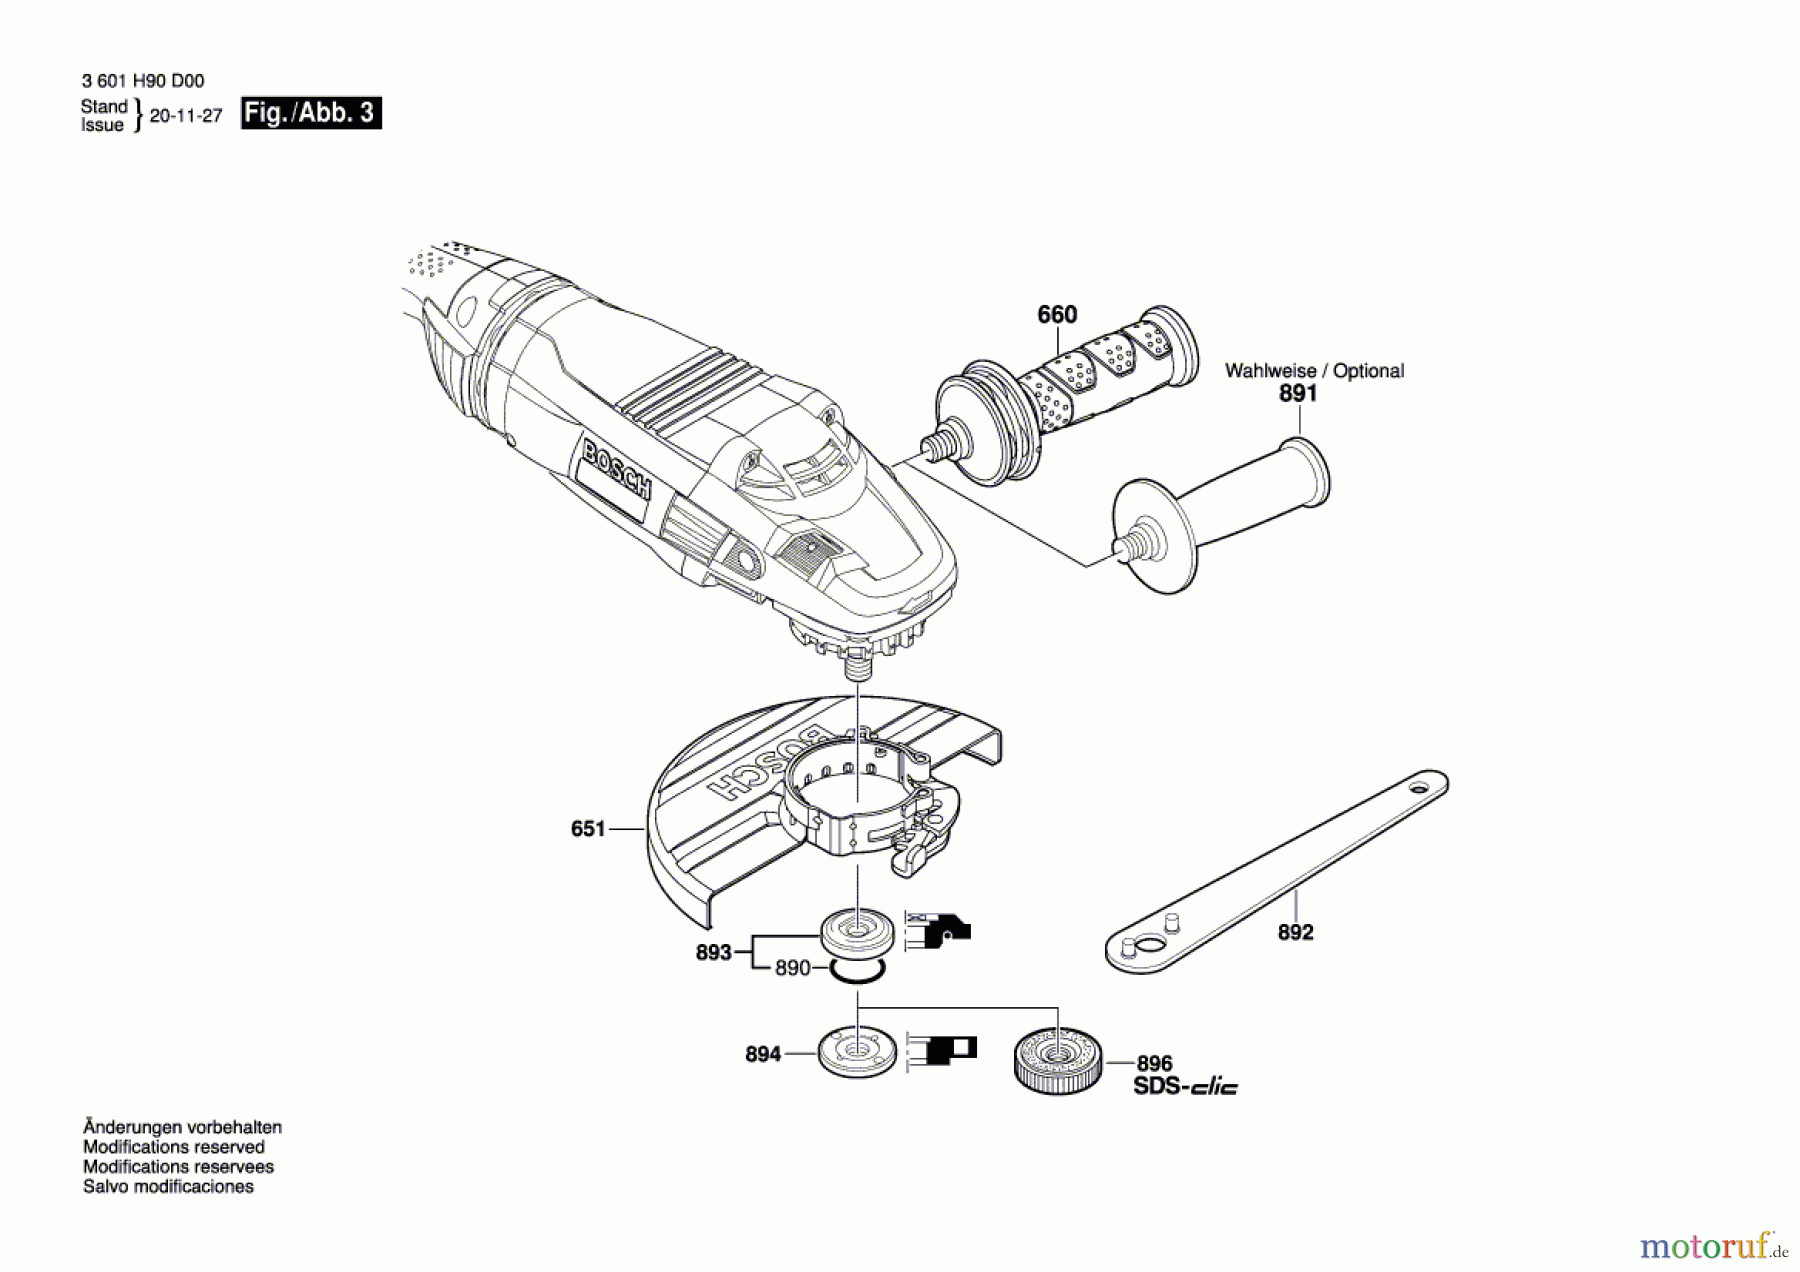  Bosch Werkzeug Winkelschleifer GWS 22-230 LVI Seite 3